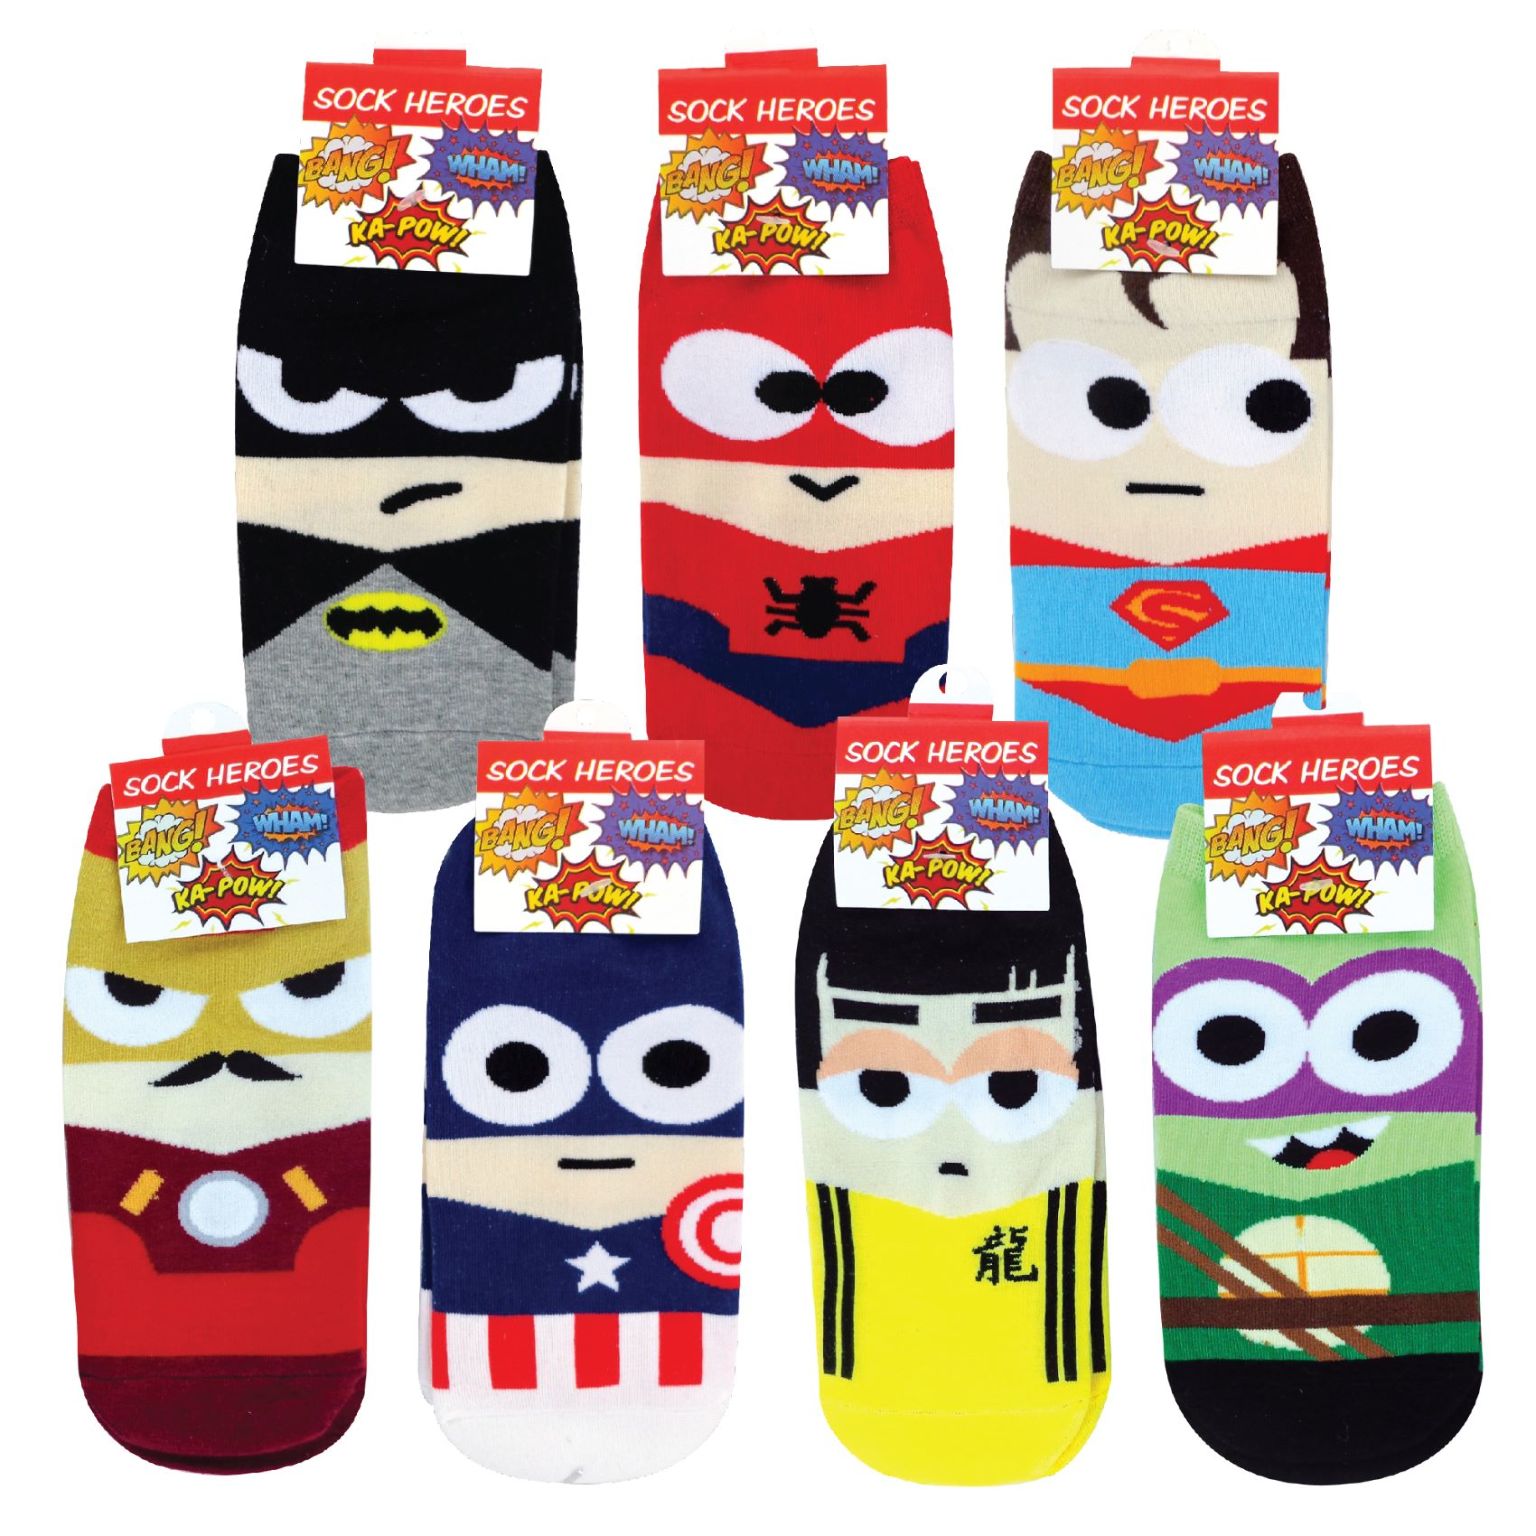 Bulk Superhero Socks in Assorted Designs - 288 Pairs